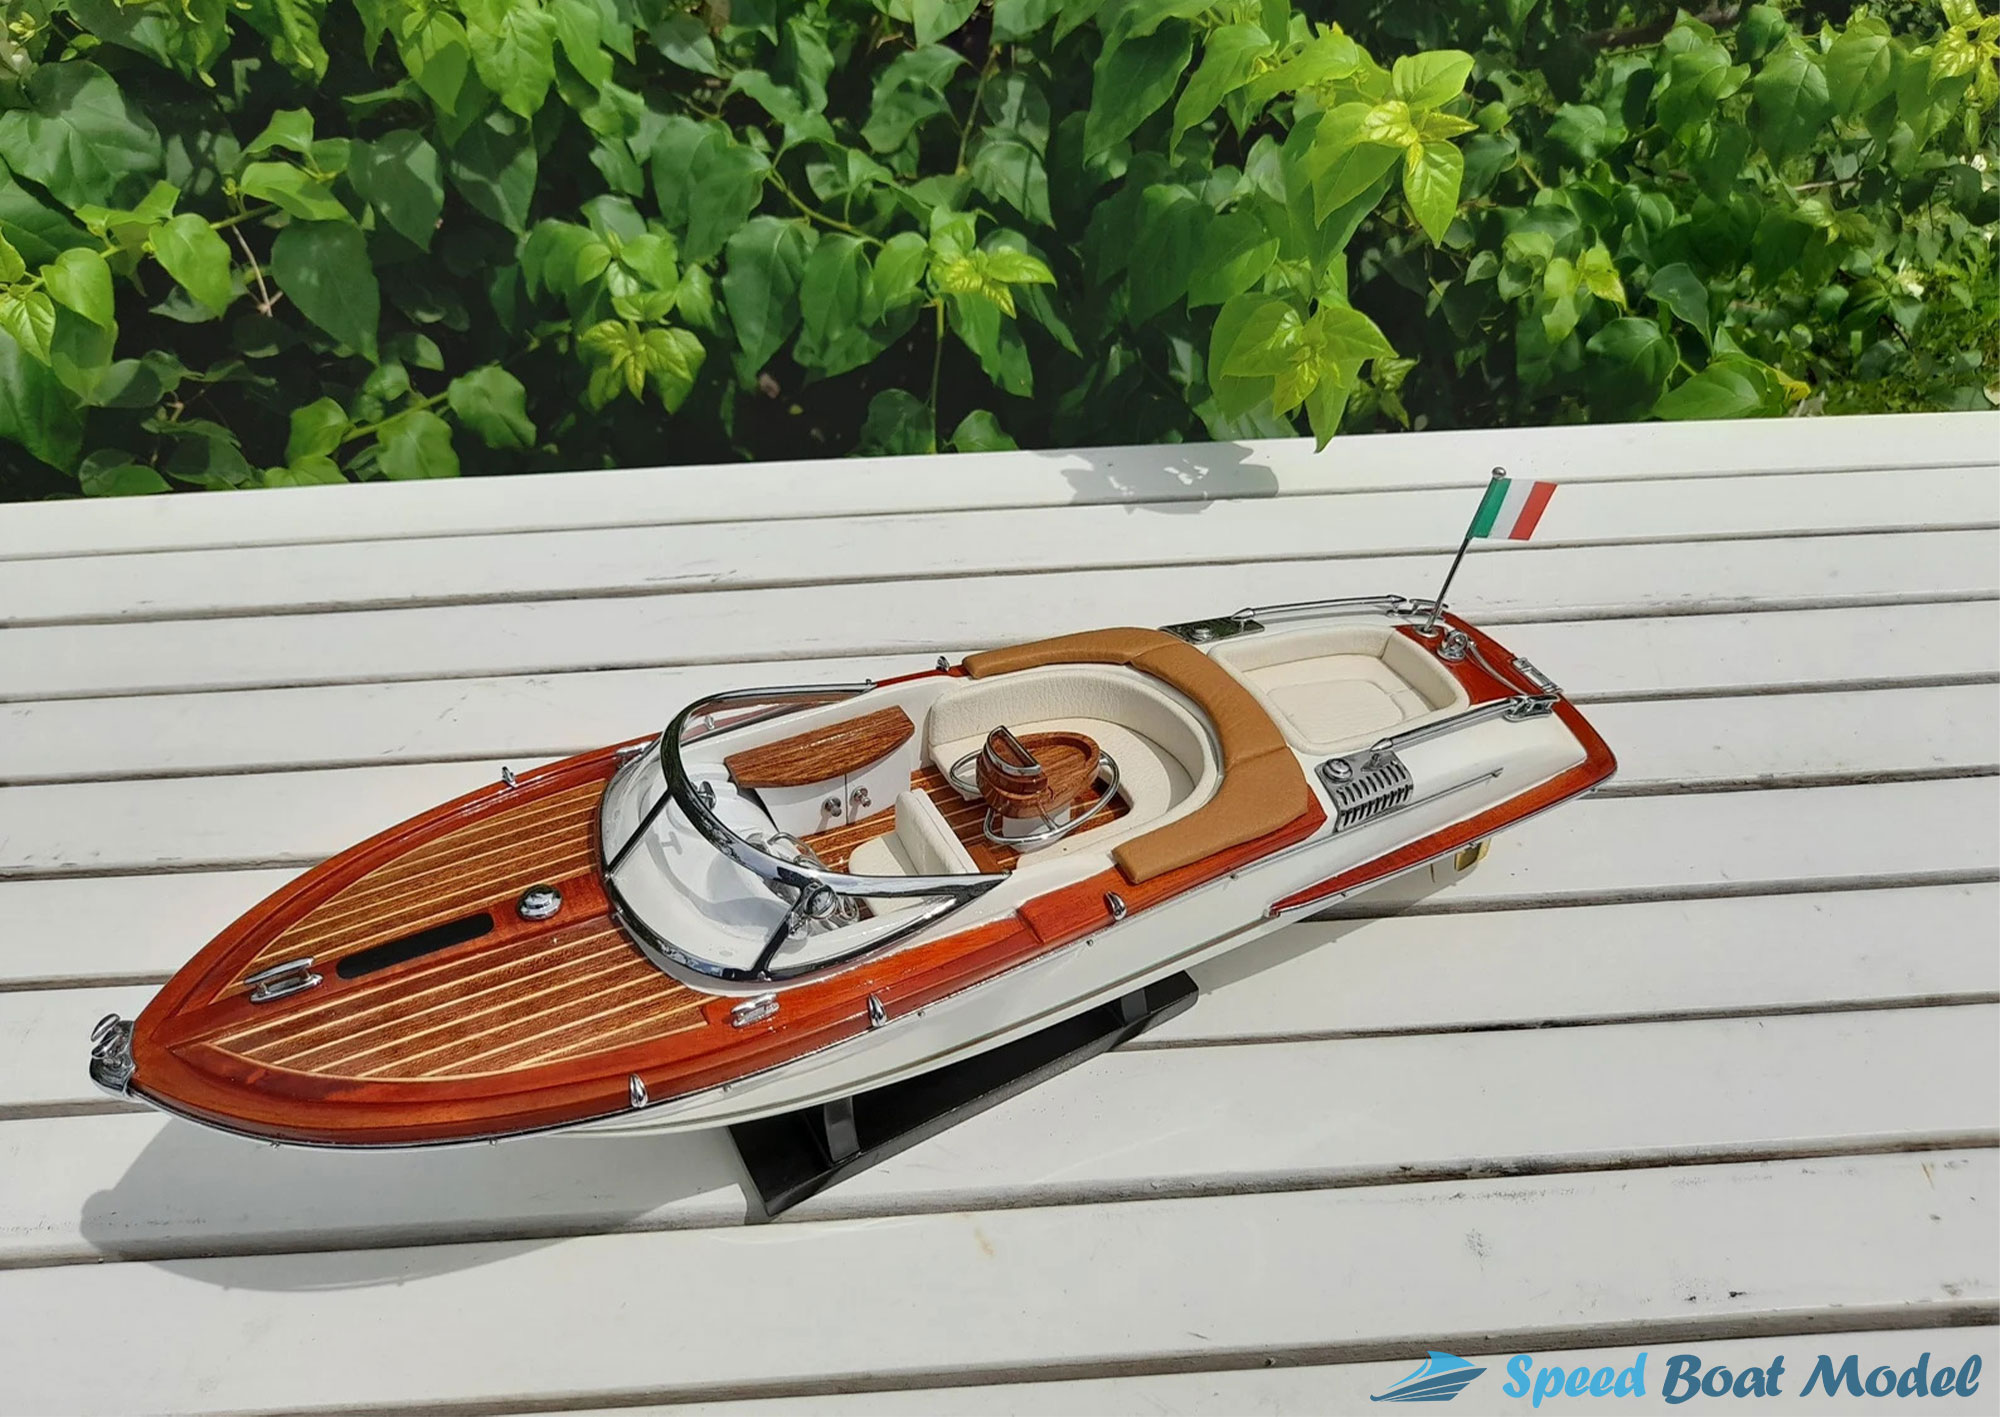 White Riva Aquariva Gucci Boat Model 16.5"